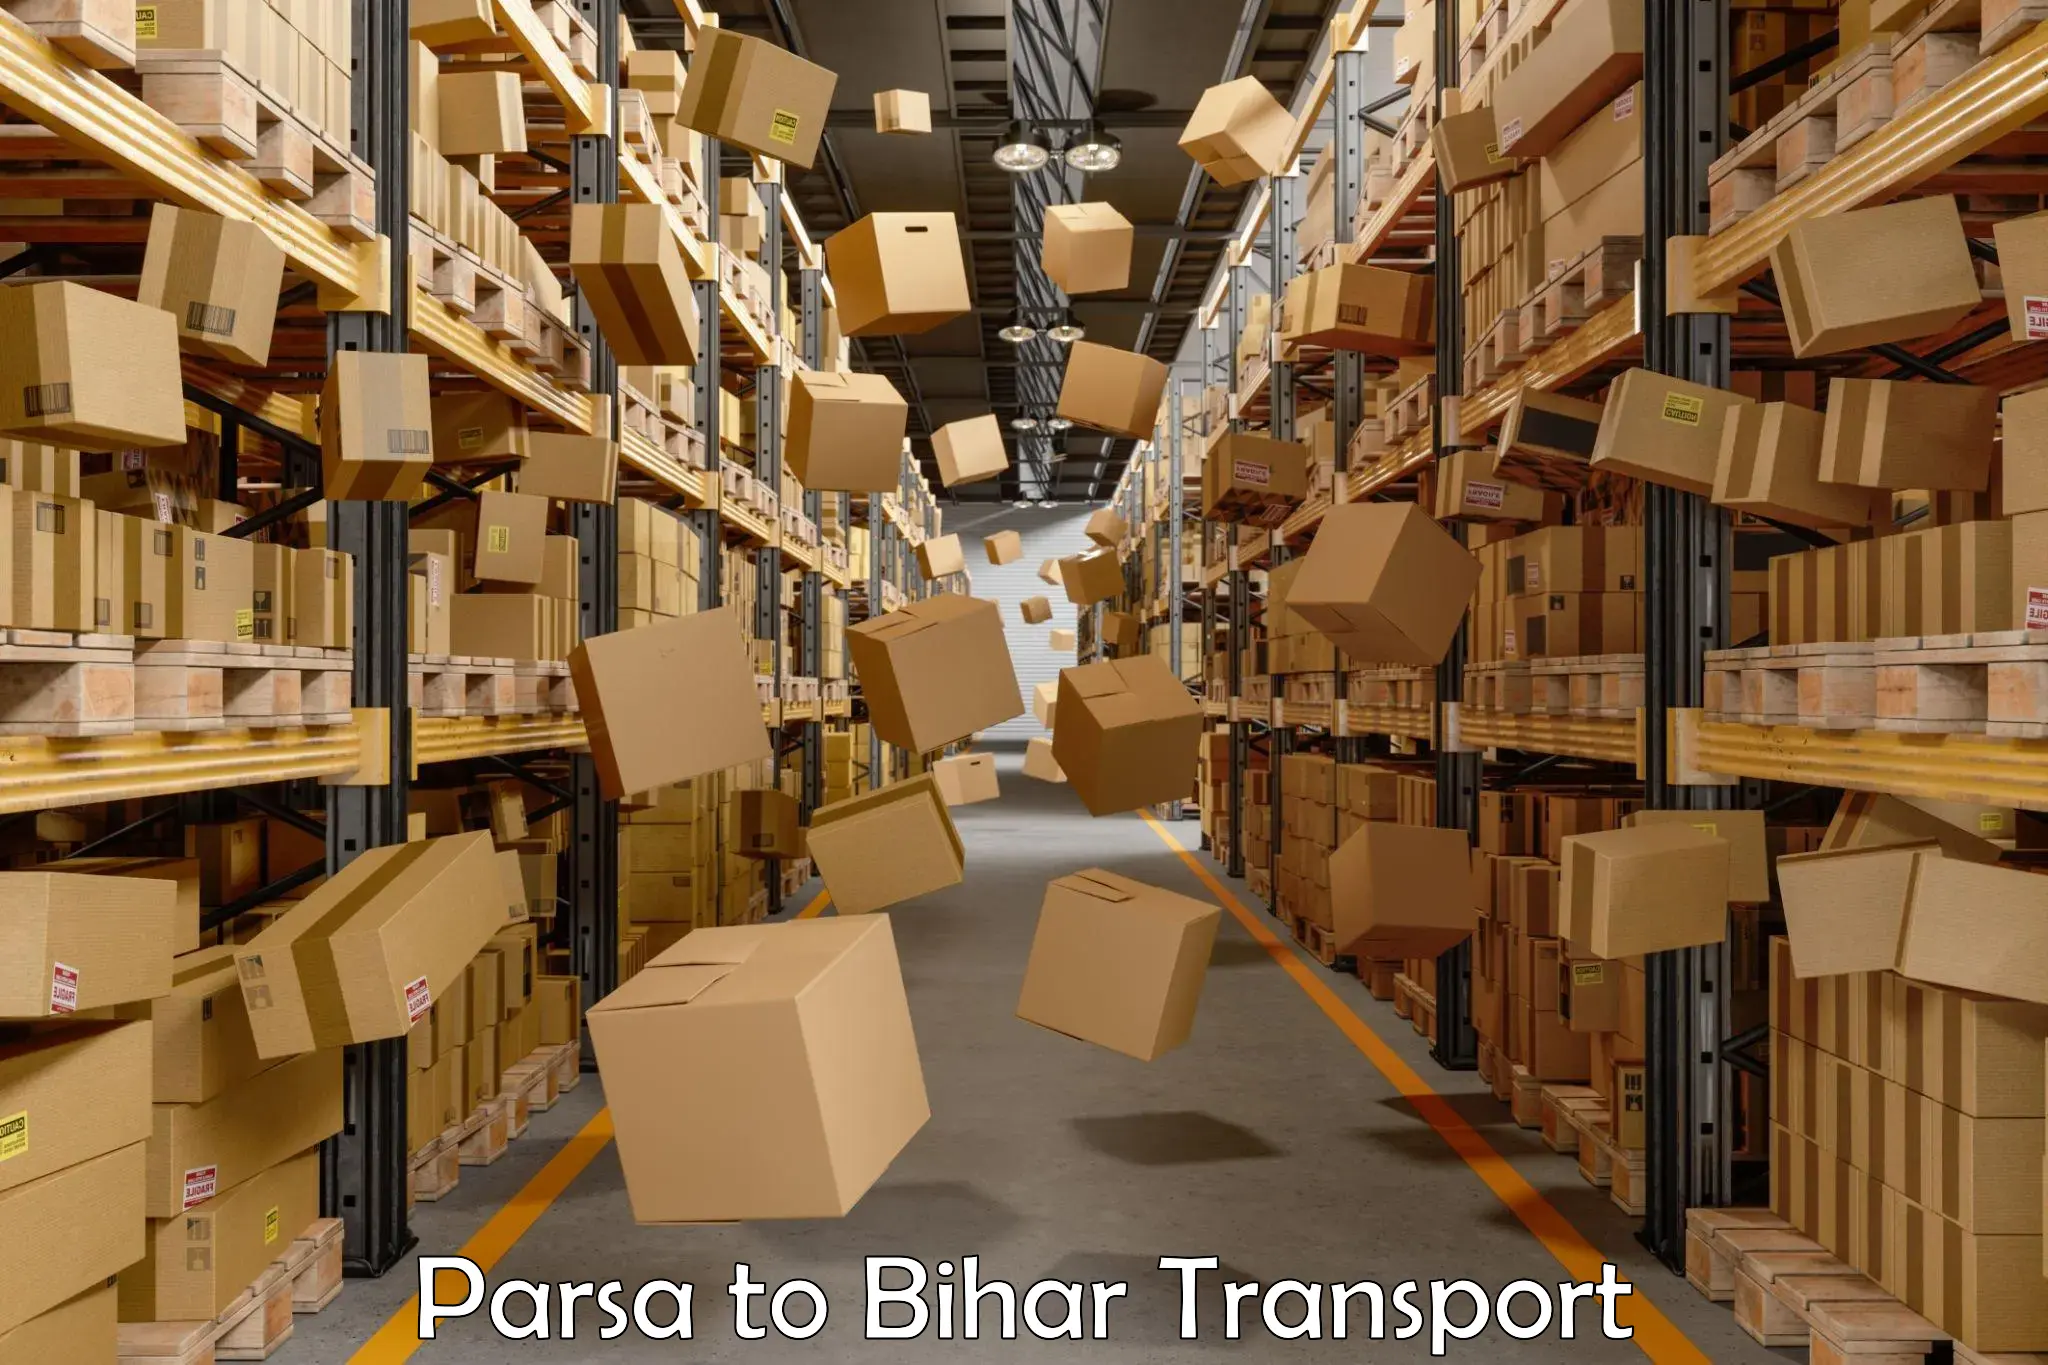 Pick up transport service Parsa to Sangrampur